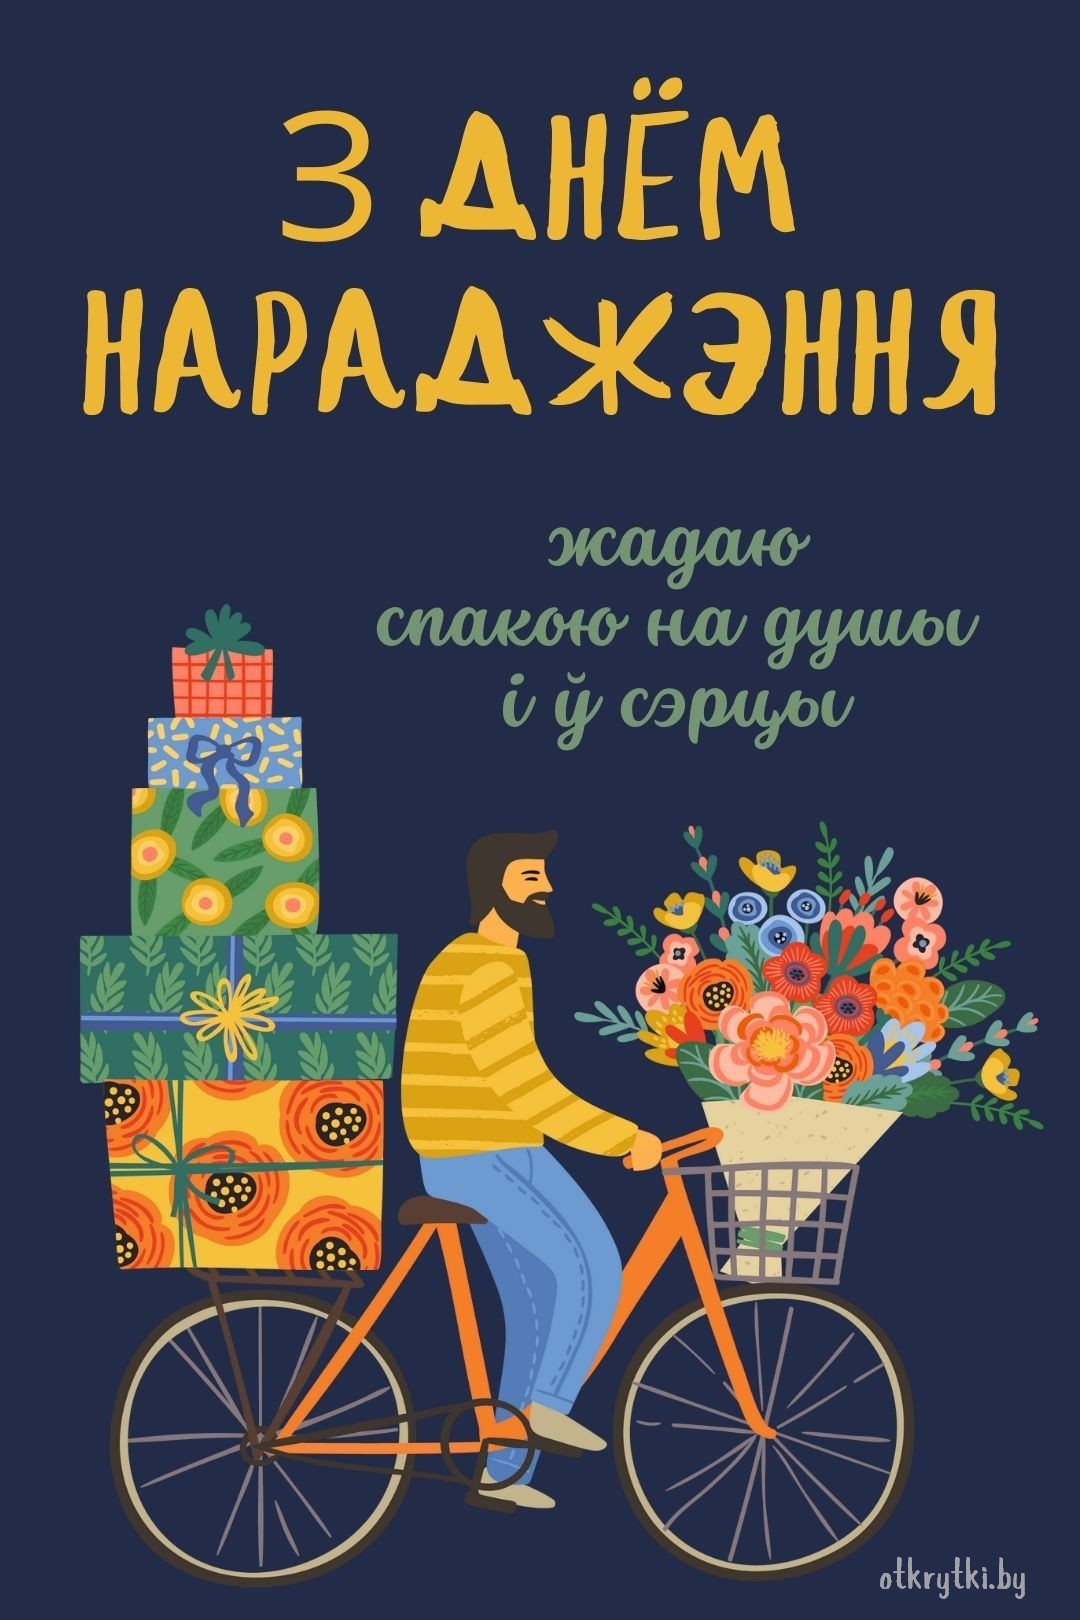 Электронная открытка с днем рождения на белорусском языке